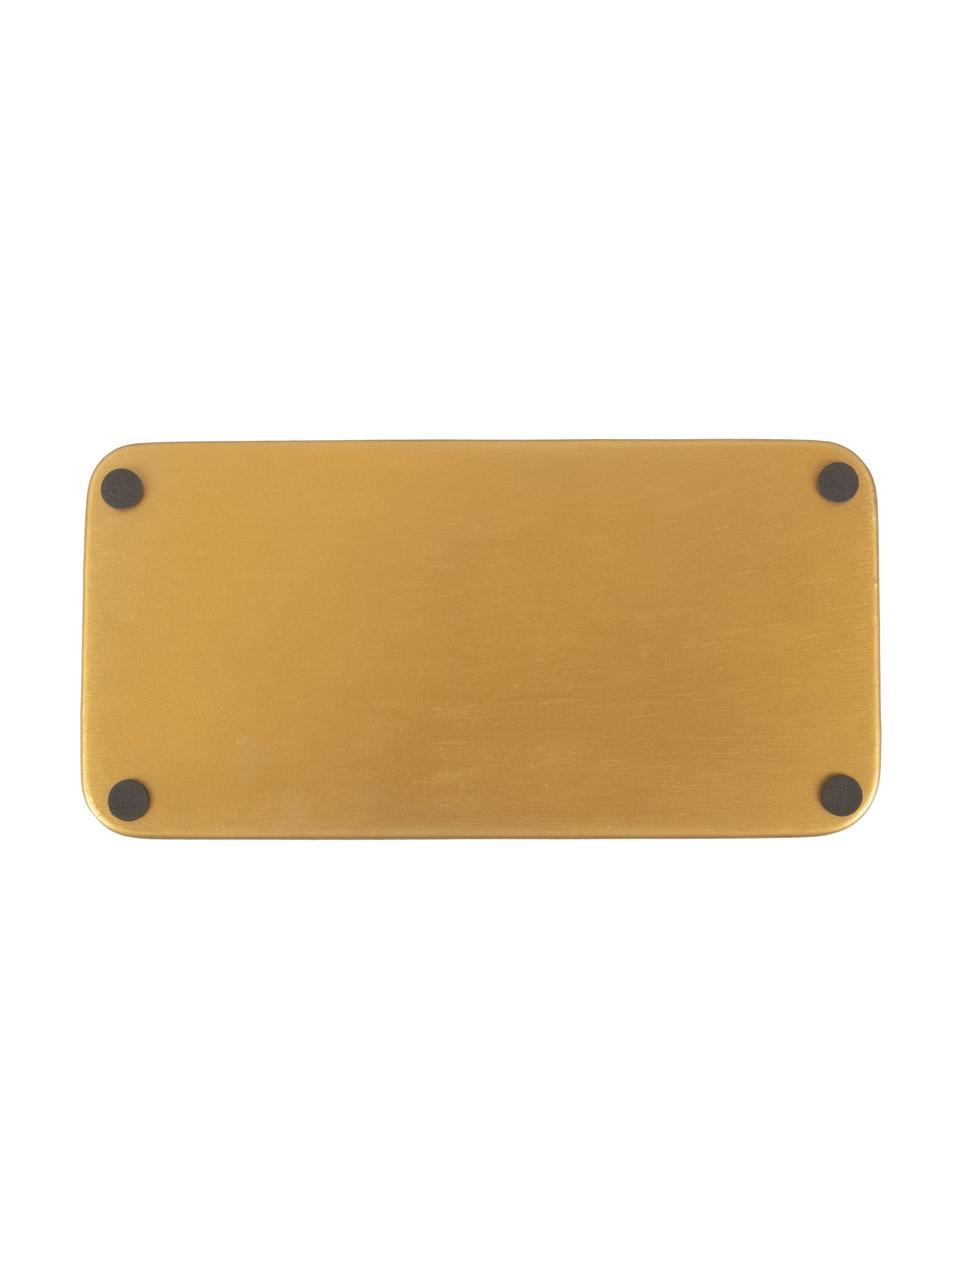 Deko-Tablett Festive in Hellgrün, L 25 x B 13 cm, Metall, beschichtet, Hellgrün, Goldfarben, L 25 x B 13 cm